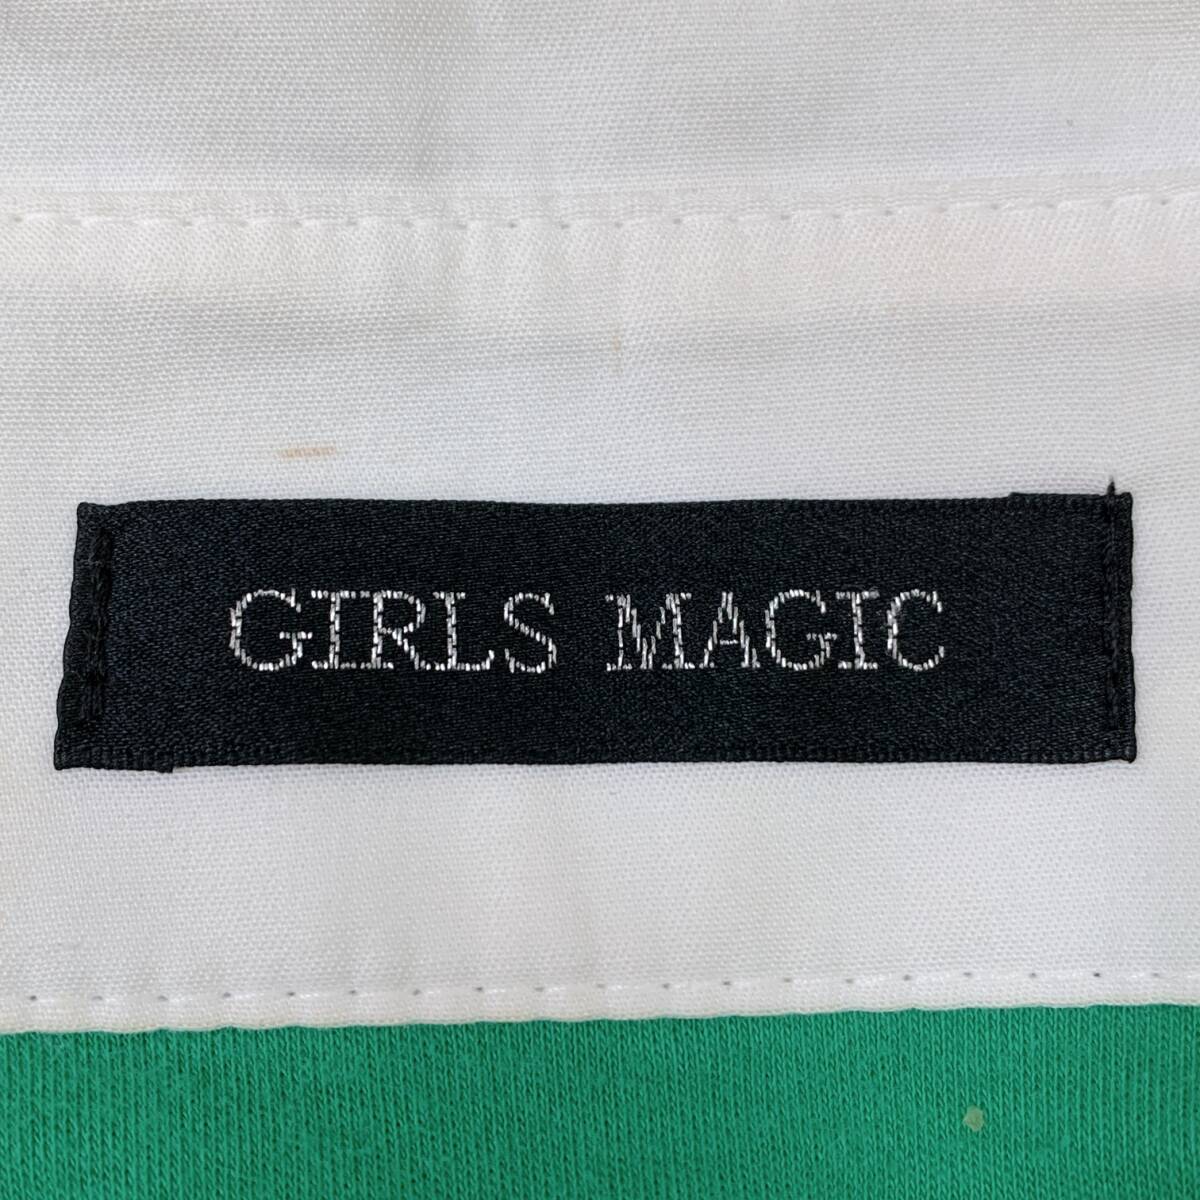 S2755 GIRLS MAGIC レディース ひざ丈ワンピース 半袖 緑 無地 綿100% 華やか キュート ガーリーカラフルコーデ 韓国製 飾りボタン 白_画像9